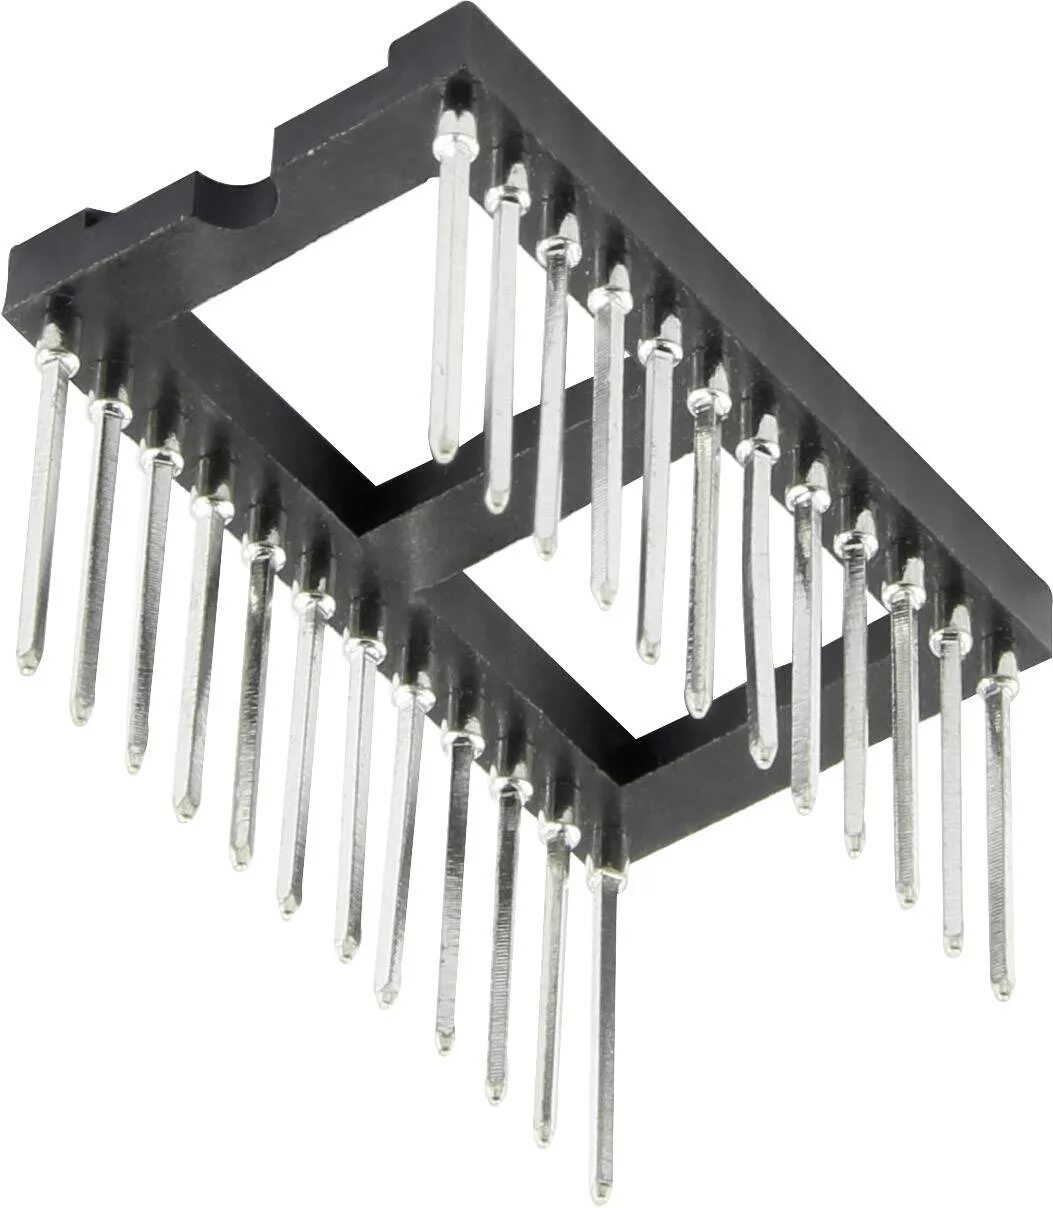 Панелька для микросхем SOP-8. Qfn40 панелька под микросхему. Панелька для микросхем рсн6-1 85. Панель 1.27 мм для микросхем быстрозажим. Микросхема под